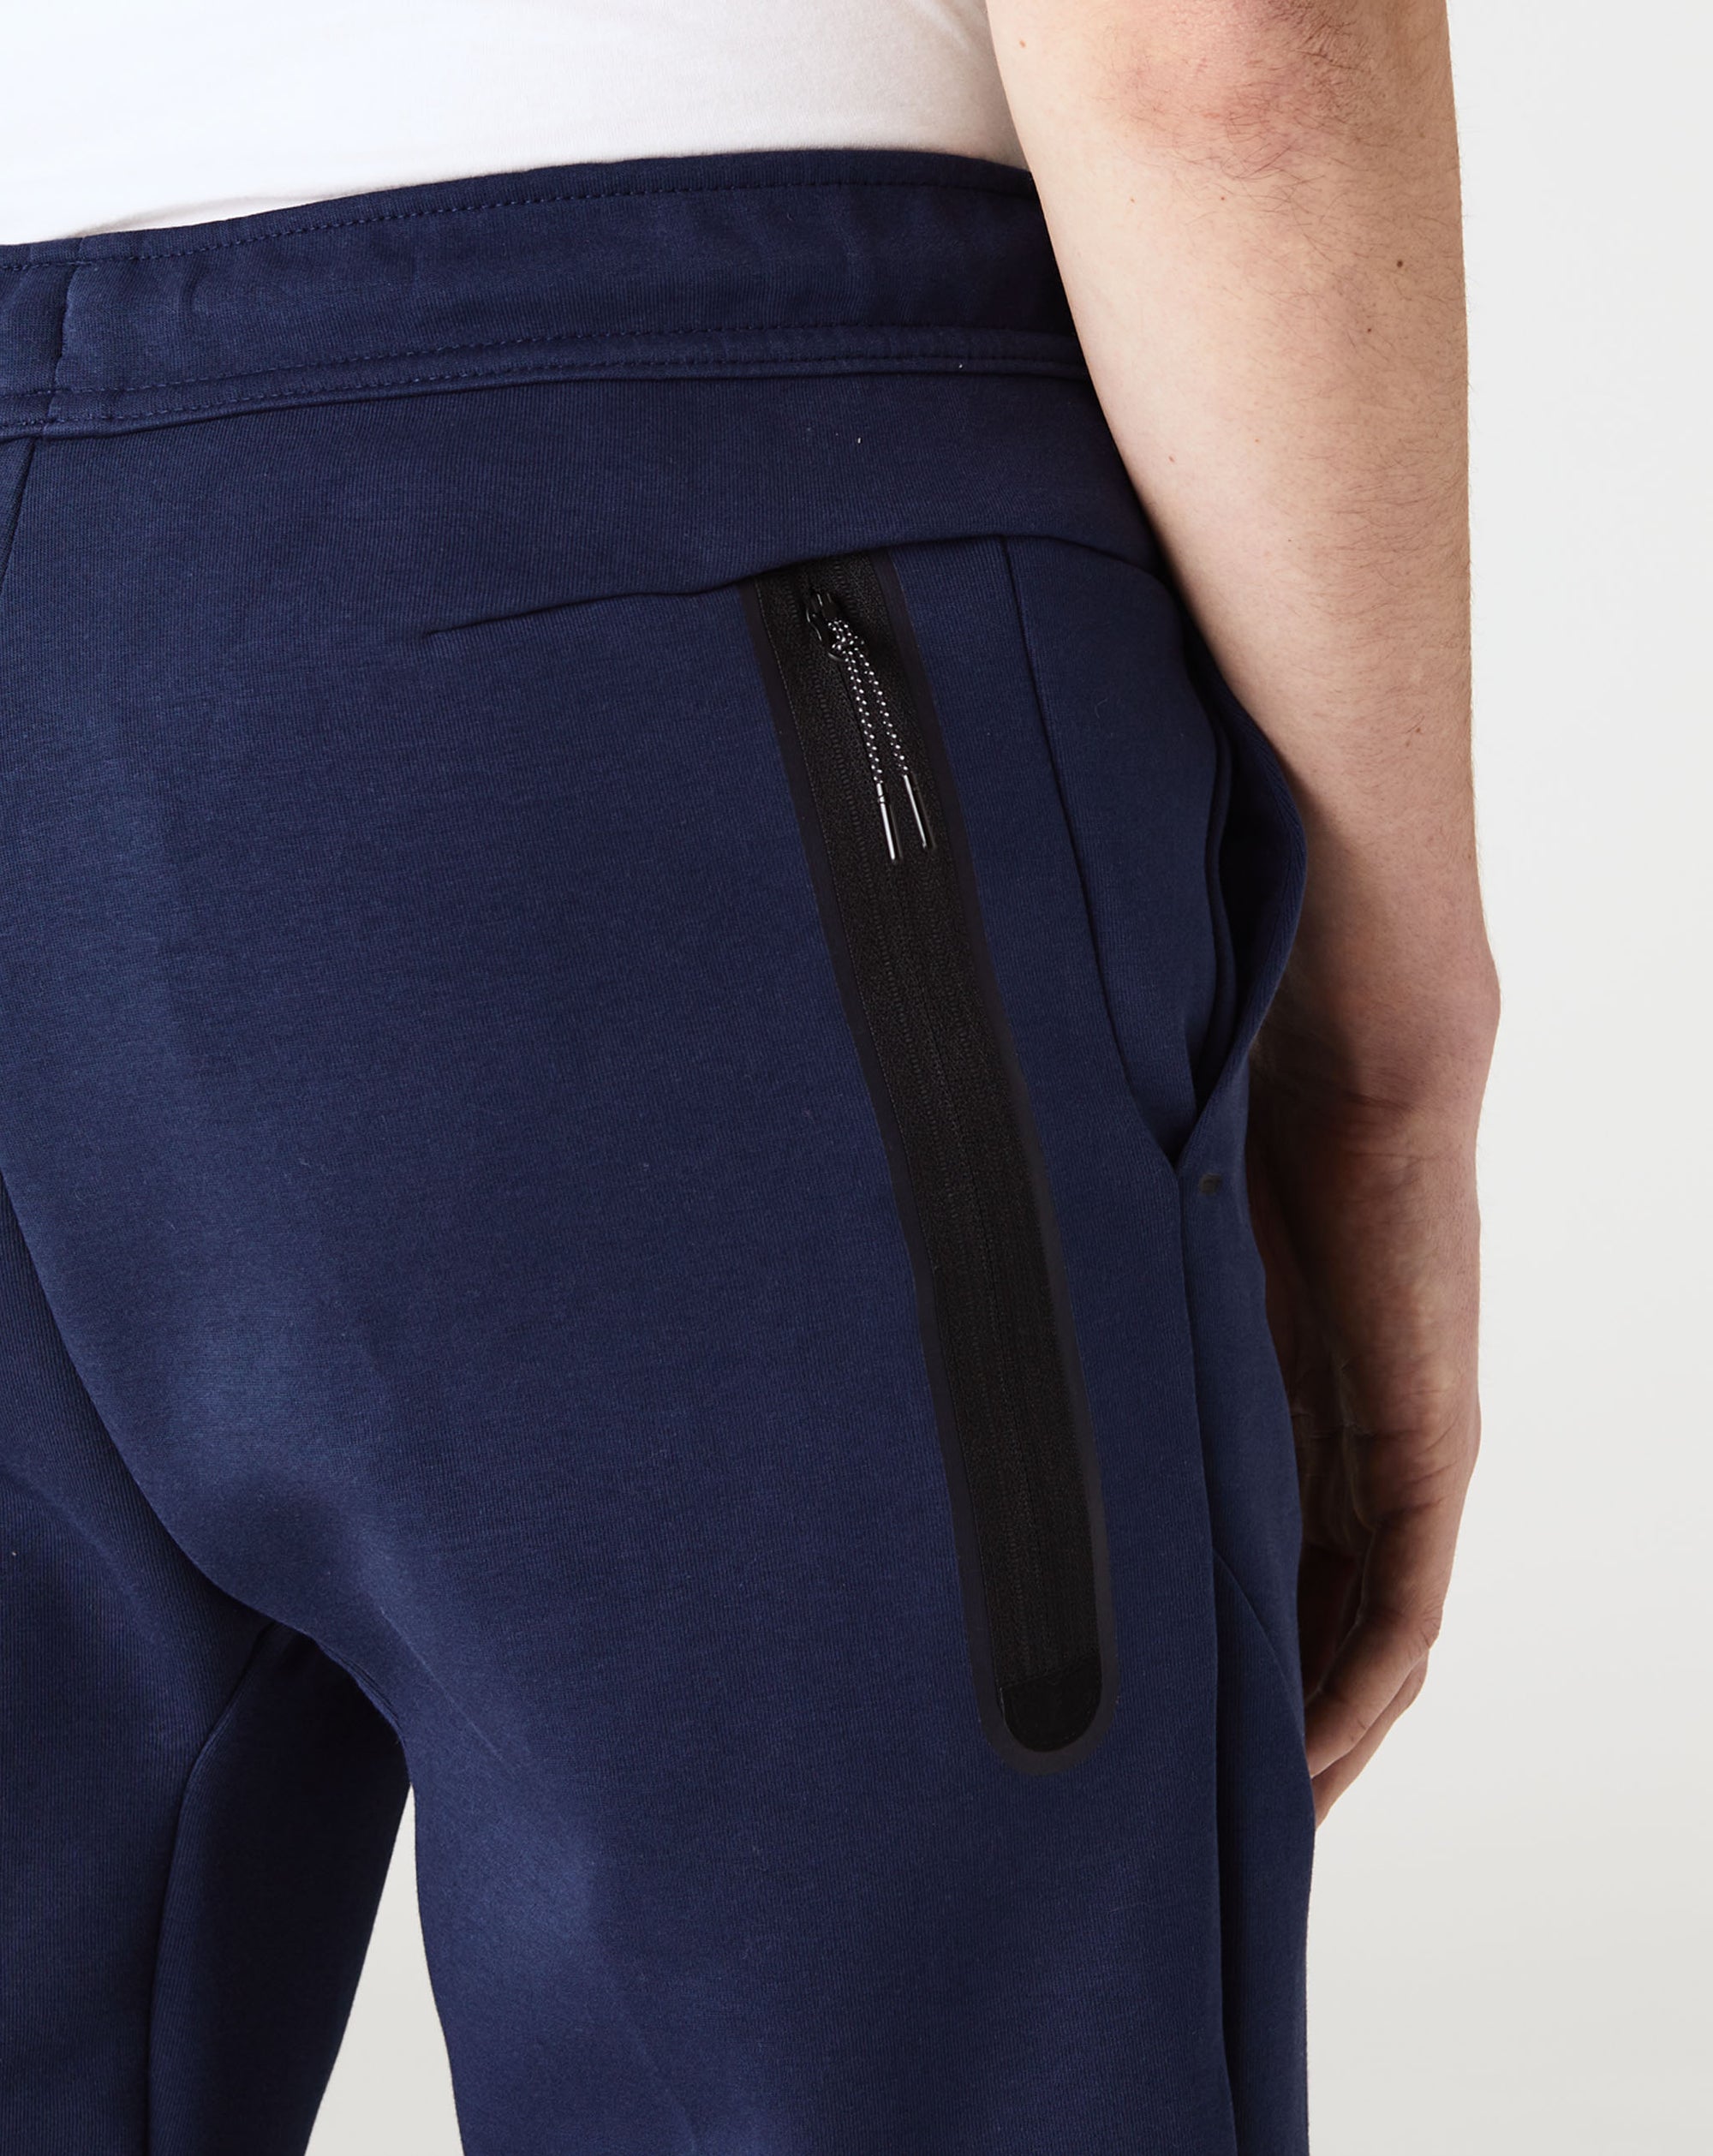 Nike Tech Fleece Jogging Pants in Blue for Men